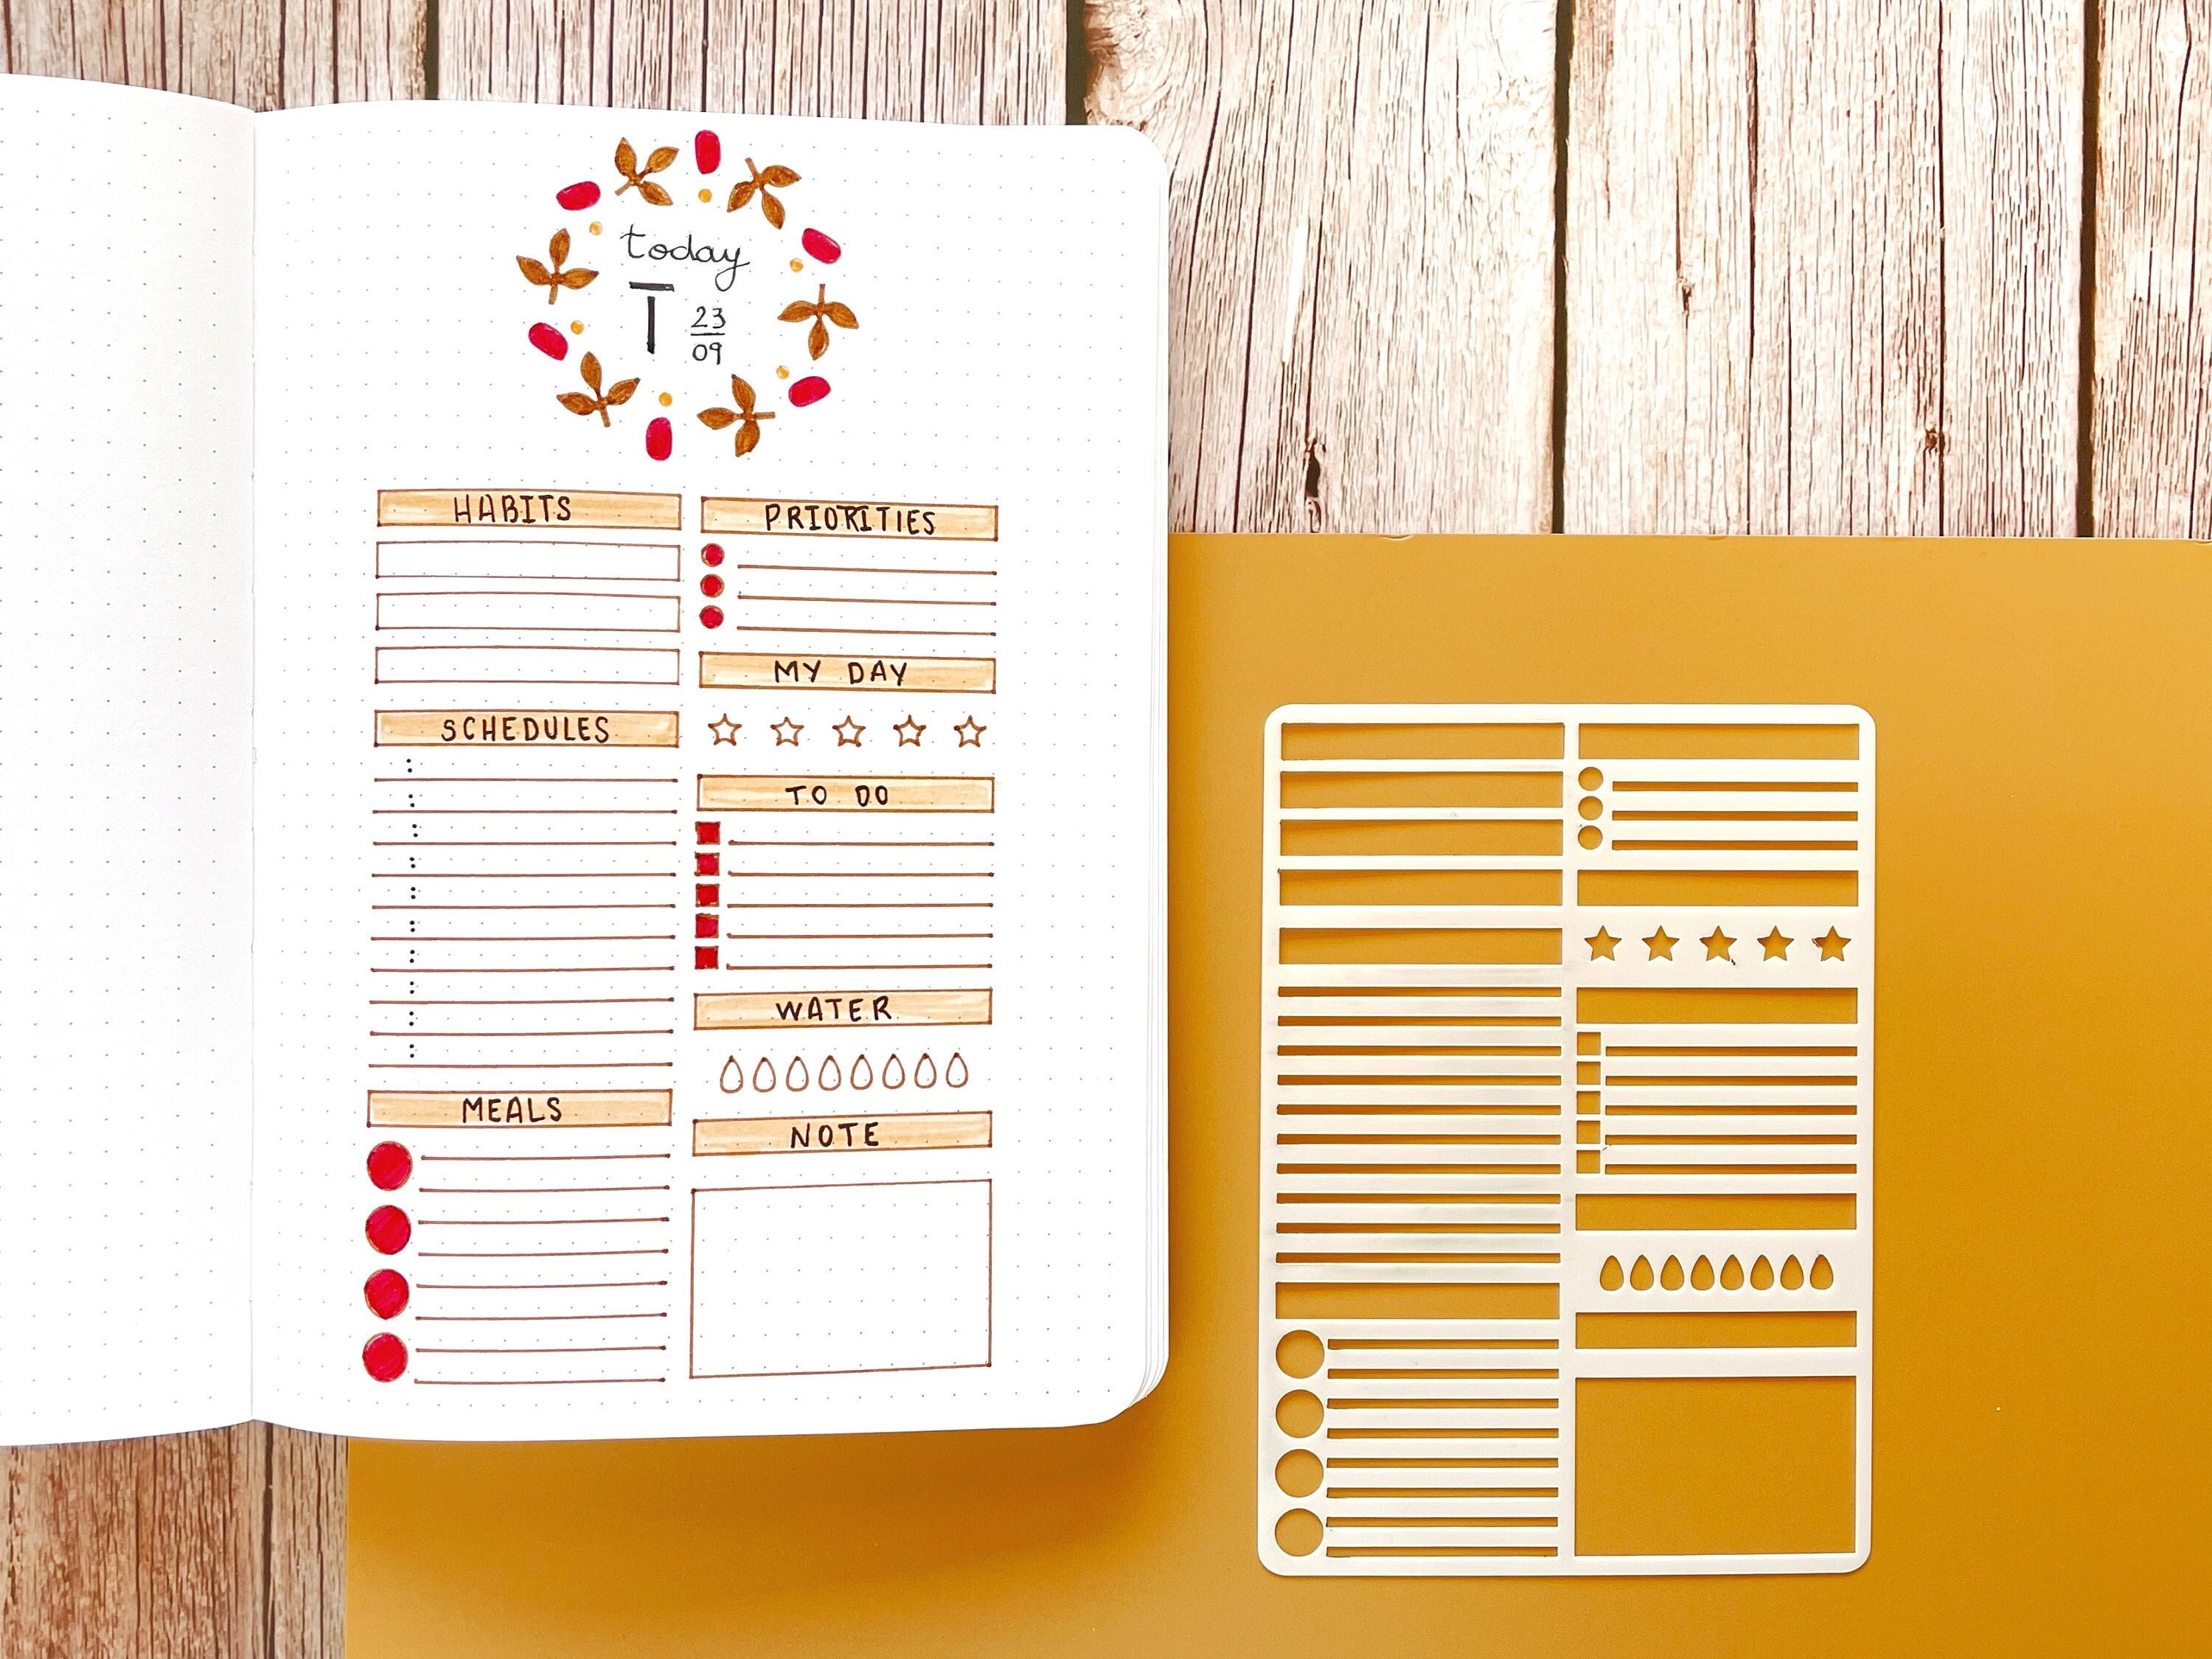 Weekly Planner Layout Journaling Supplies Kit (18 Stencils & 14 Sticker Sheets) - Minimalist